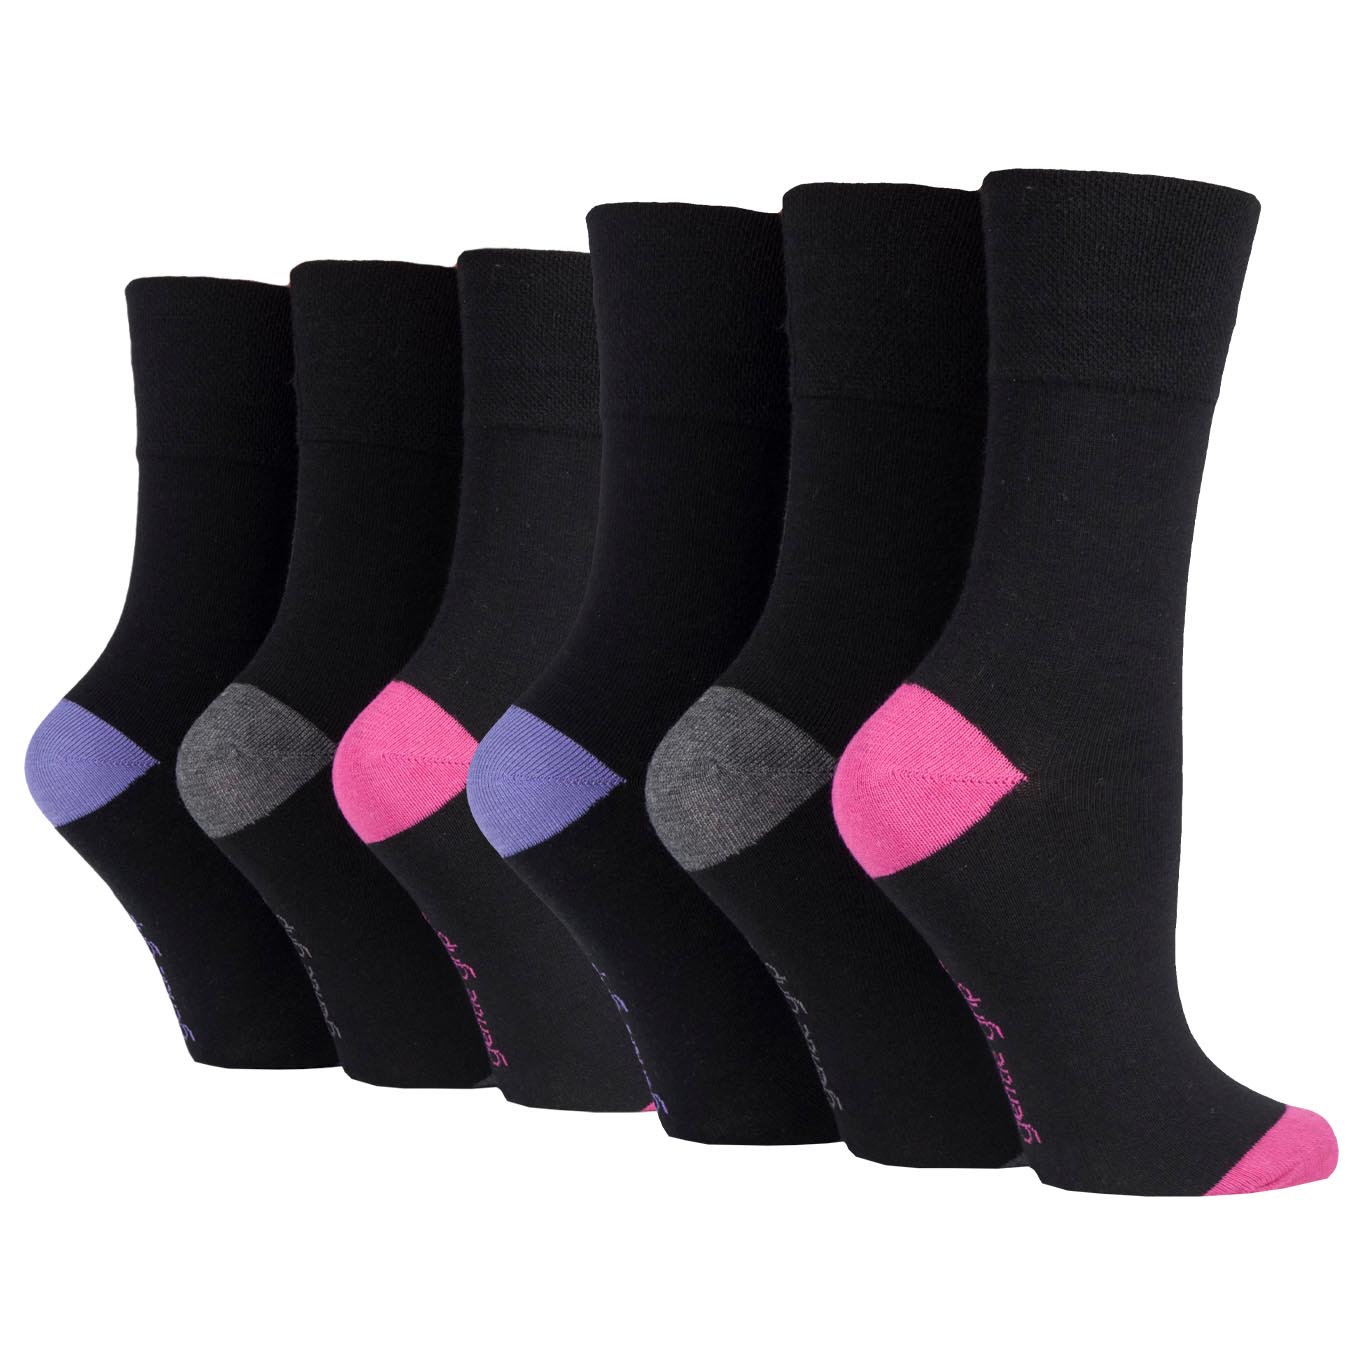 6 Pairs Ladies Gentle Grip Cotton Socks Black with Charcoal/Violet/Pink Heel & Toe